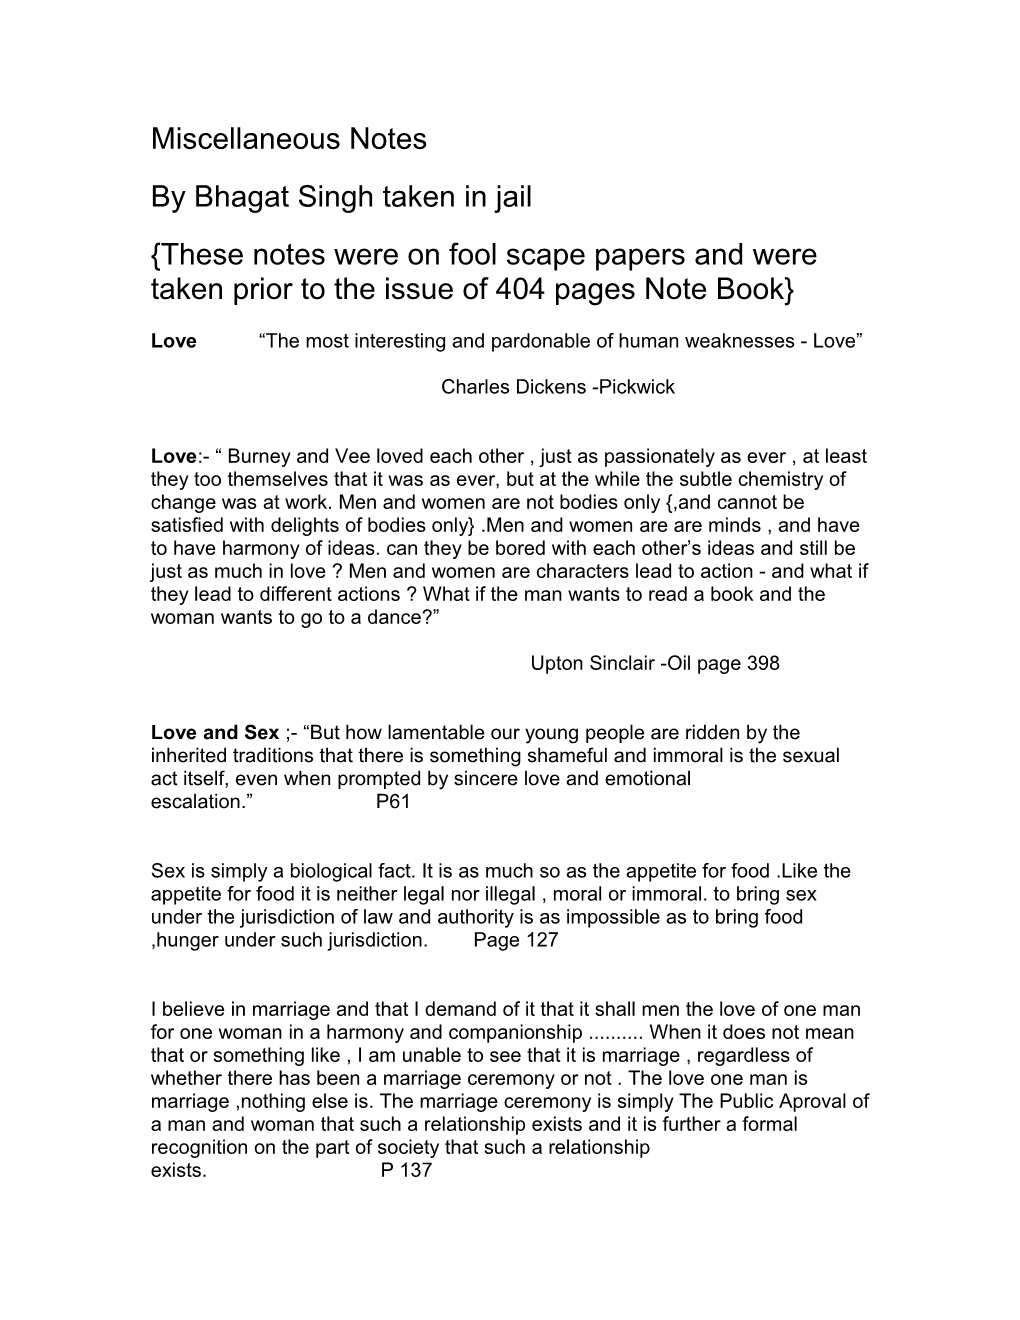 By Bhagat Singh Taken in Jail